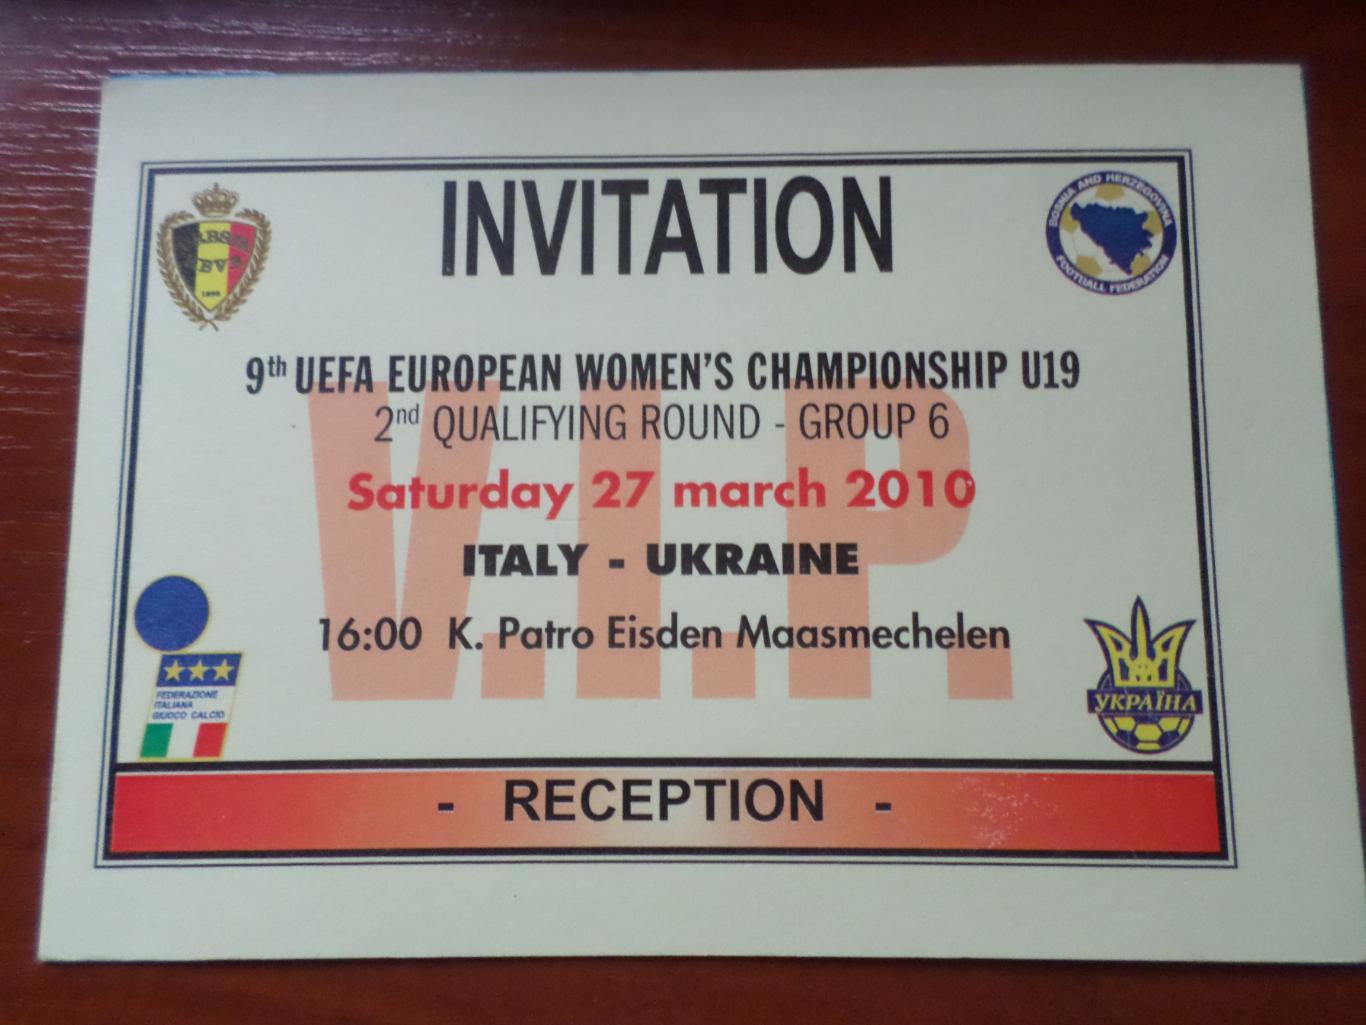 Билет - аккредитация к матчу Италия - Украина 27 марта 2010 г женщины ЧЕ U-19